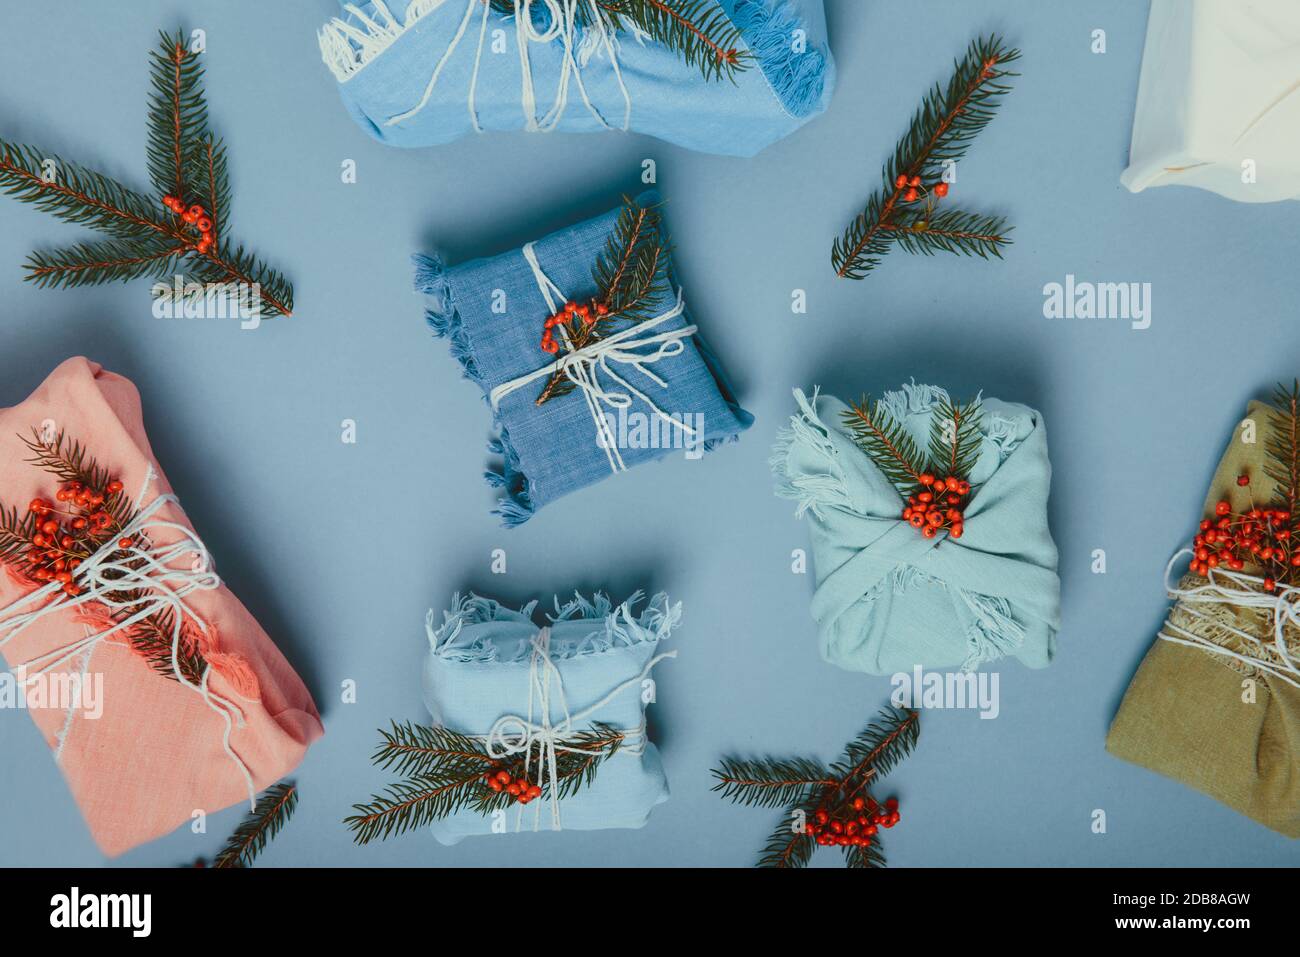 Vista superior cero desperdicio concepto de Navidad. Cajas de regalo envueltas en tela con rama de abeto y bayas sobre fondo azul mudo. Plano. Respetuoso con el medio ambiente Foto de stock